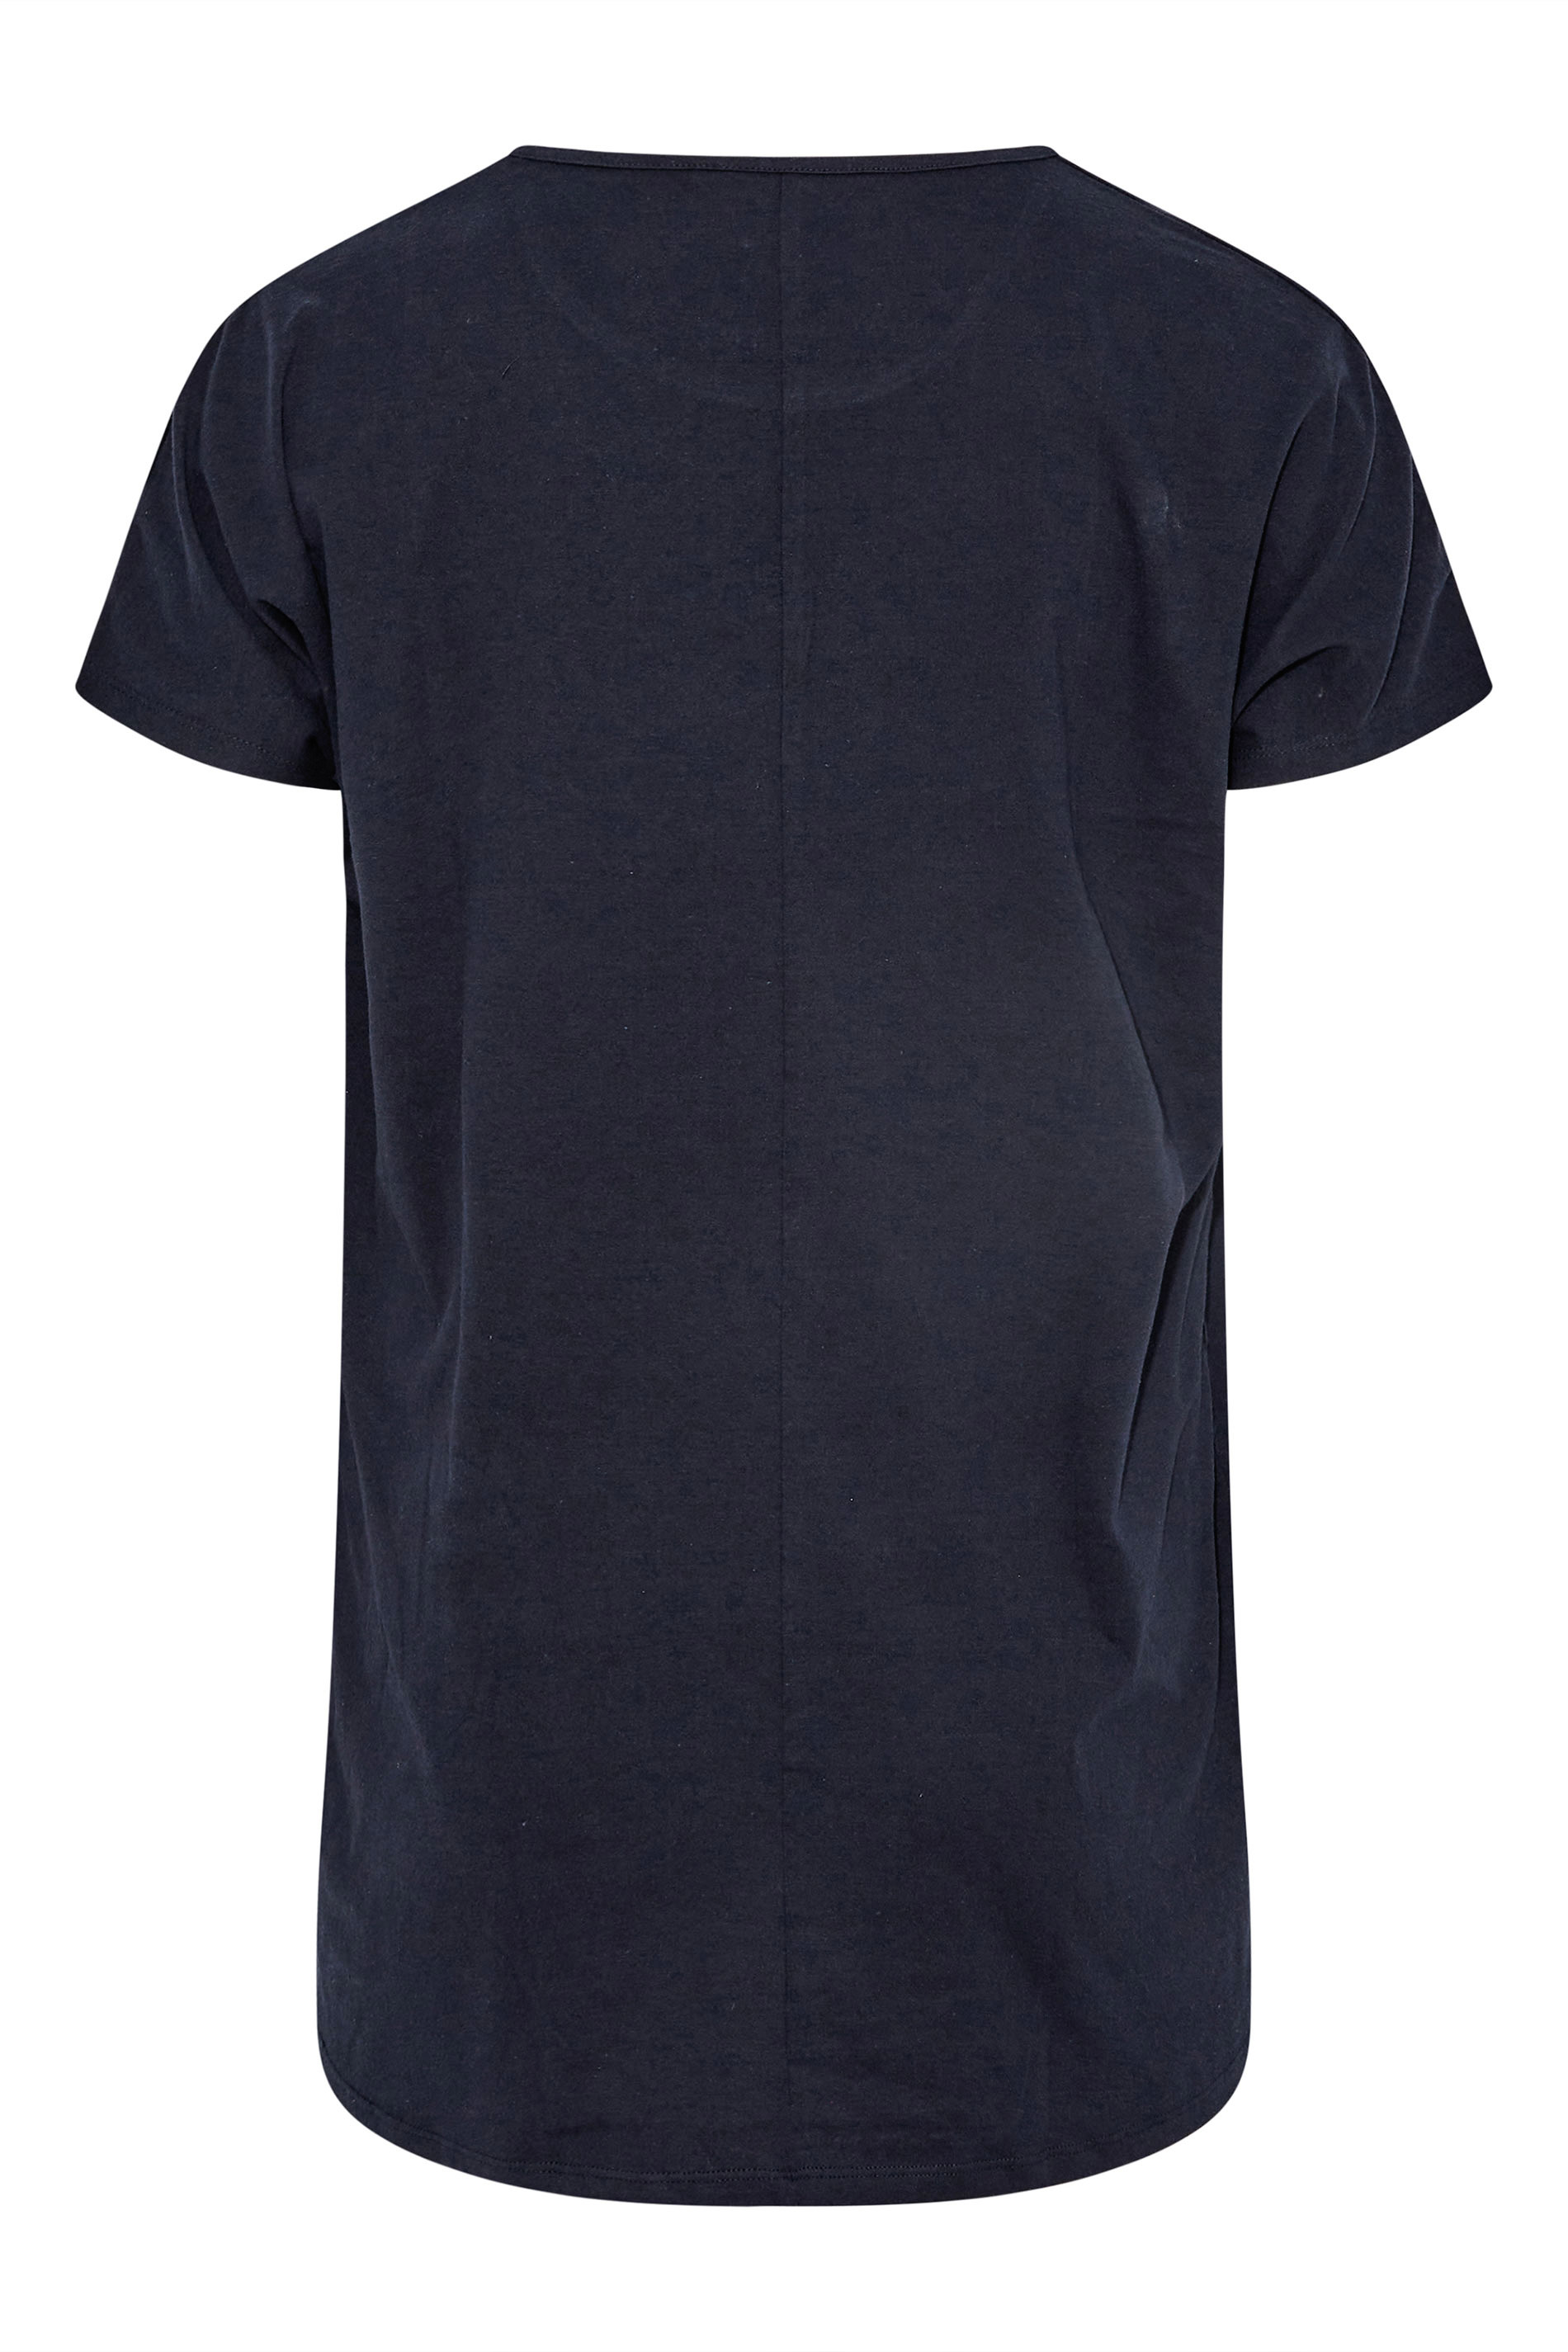 Grande taille  Tops Grande taille  T-Shirts | T-Shirt Bleu Marine Design Floral en Sequins - AD40592